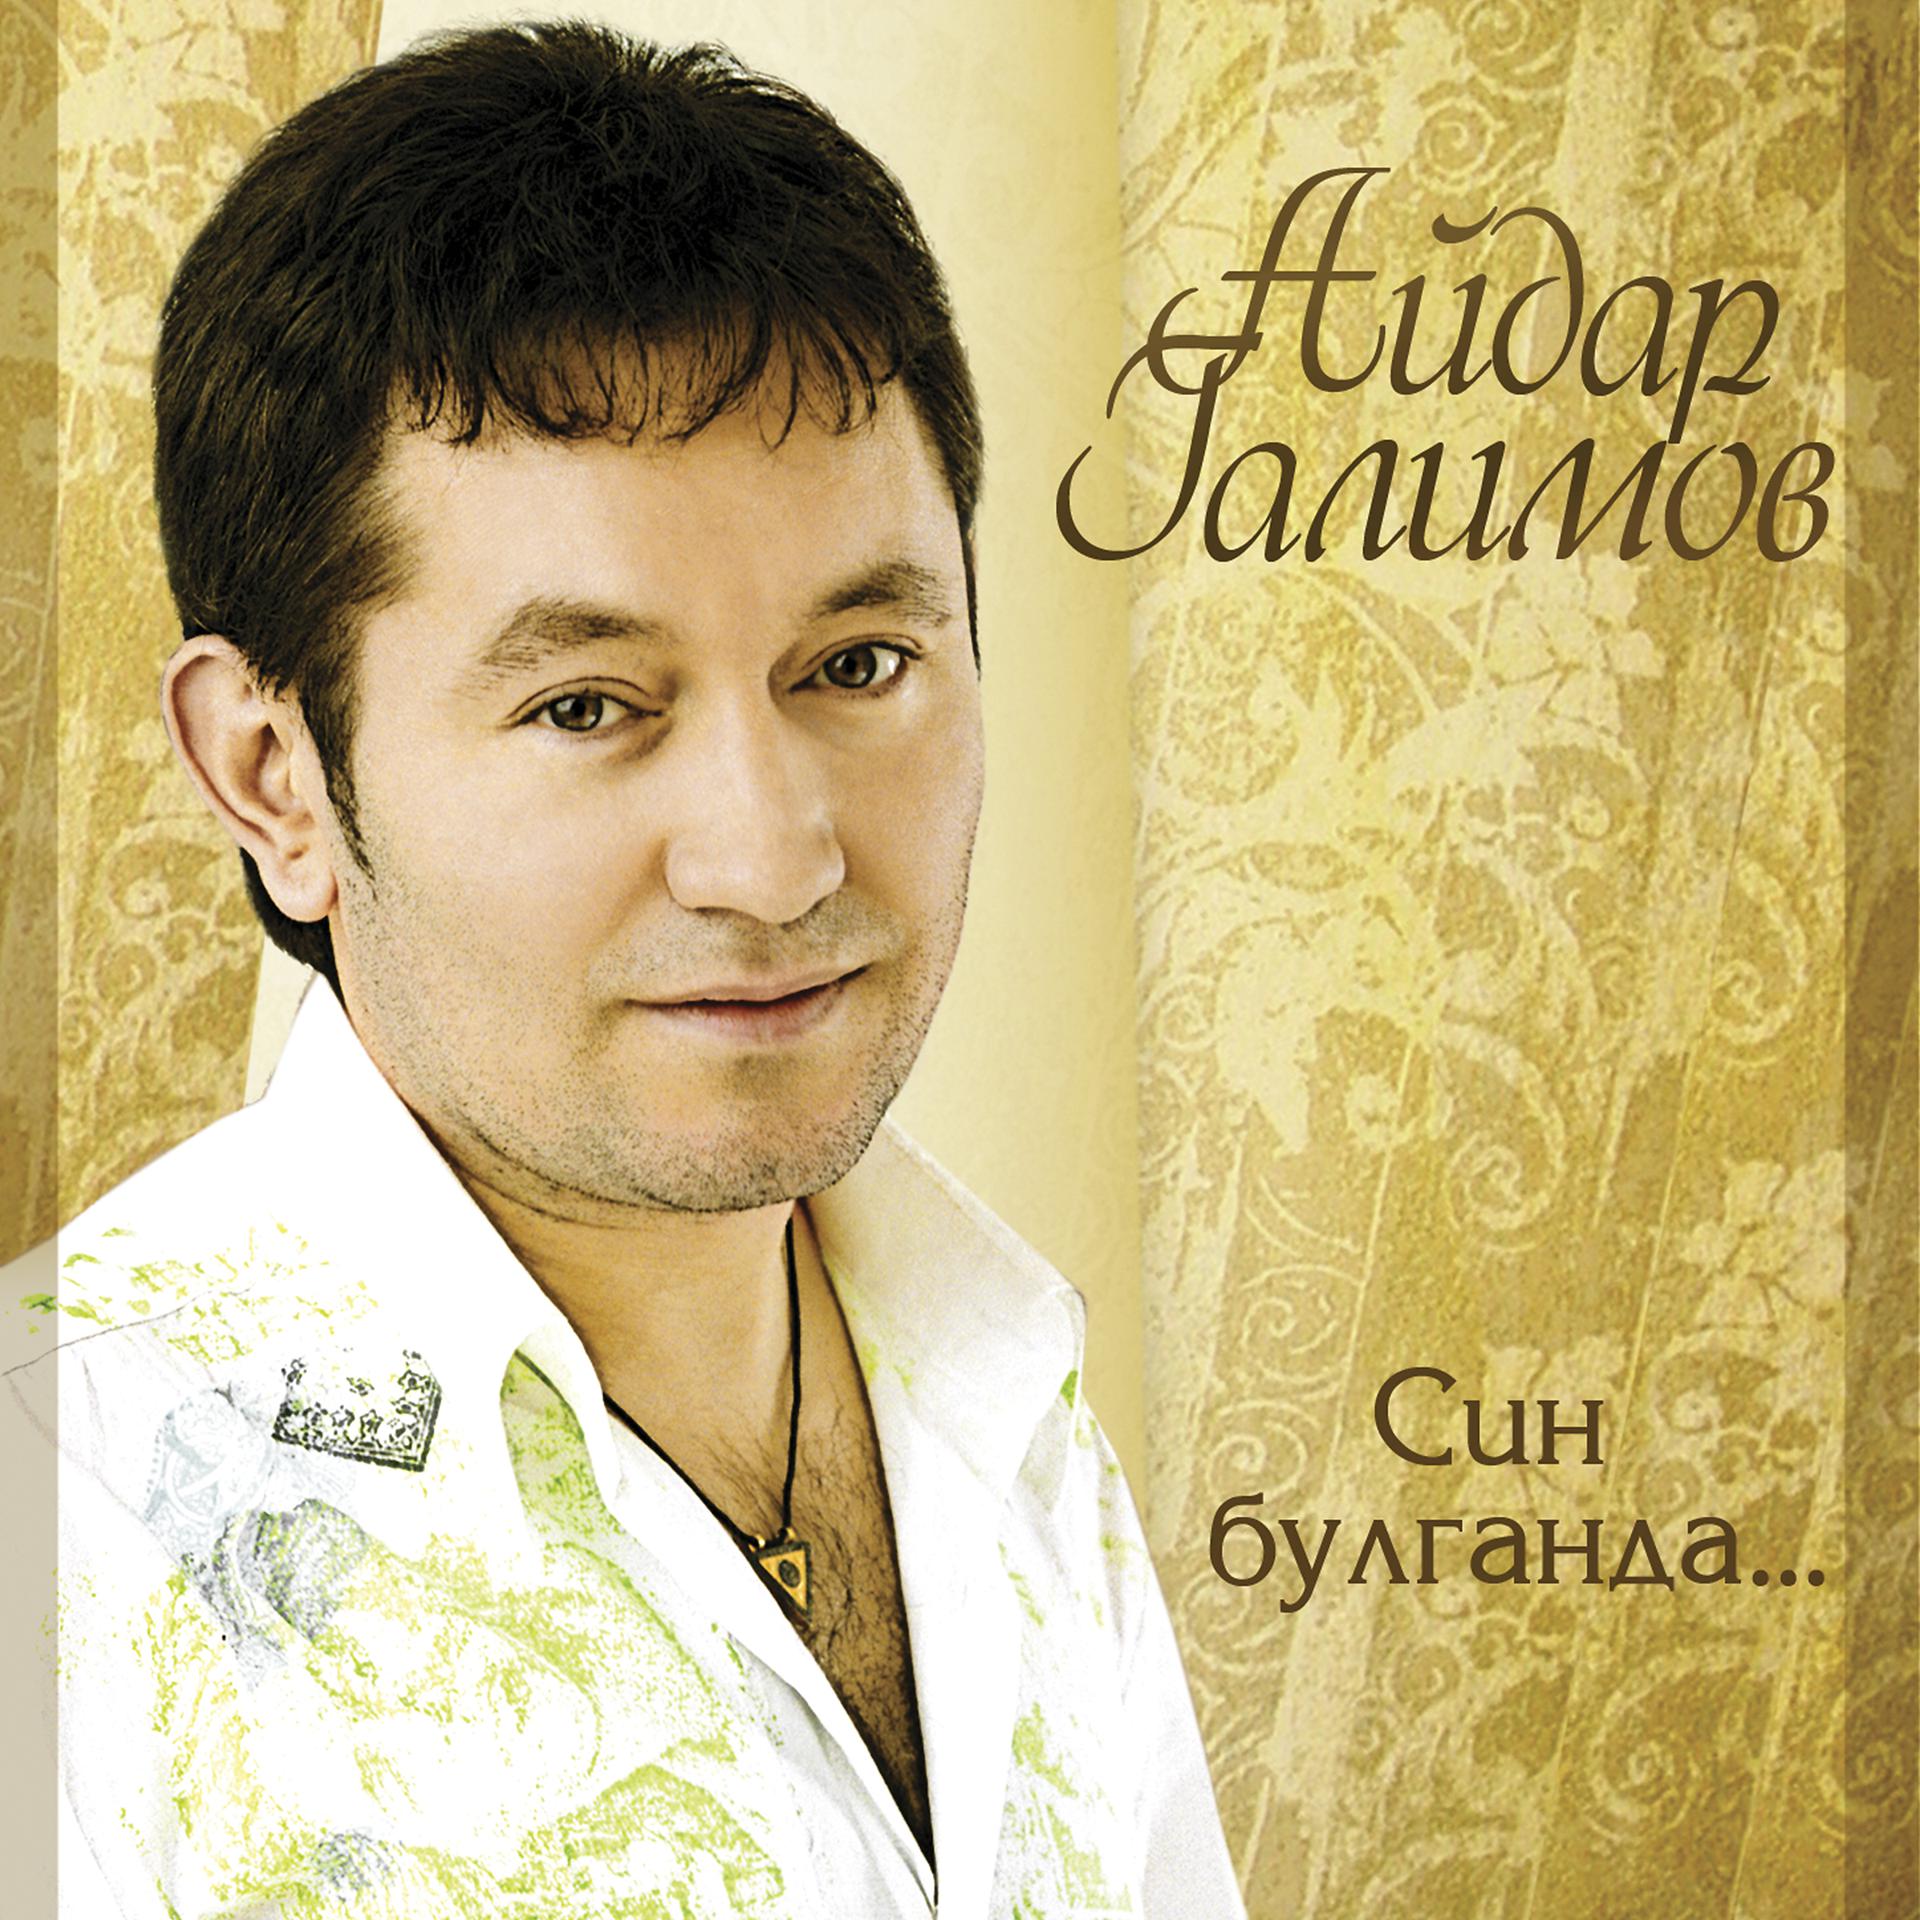 Татарский певец Ильдар Галимов.